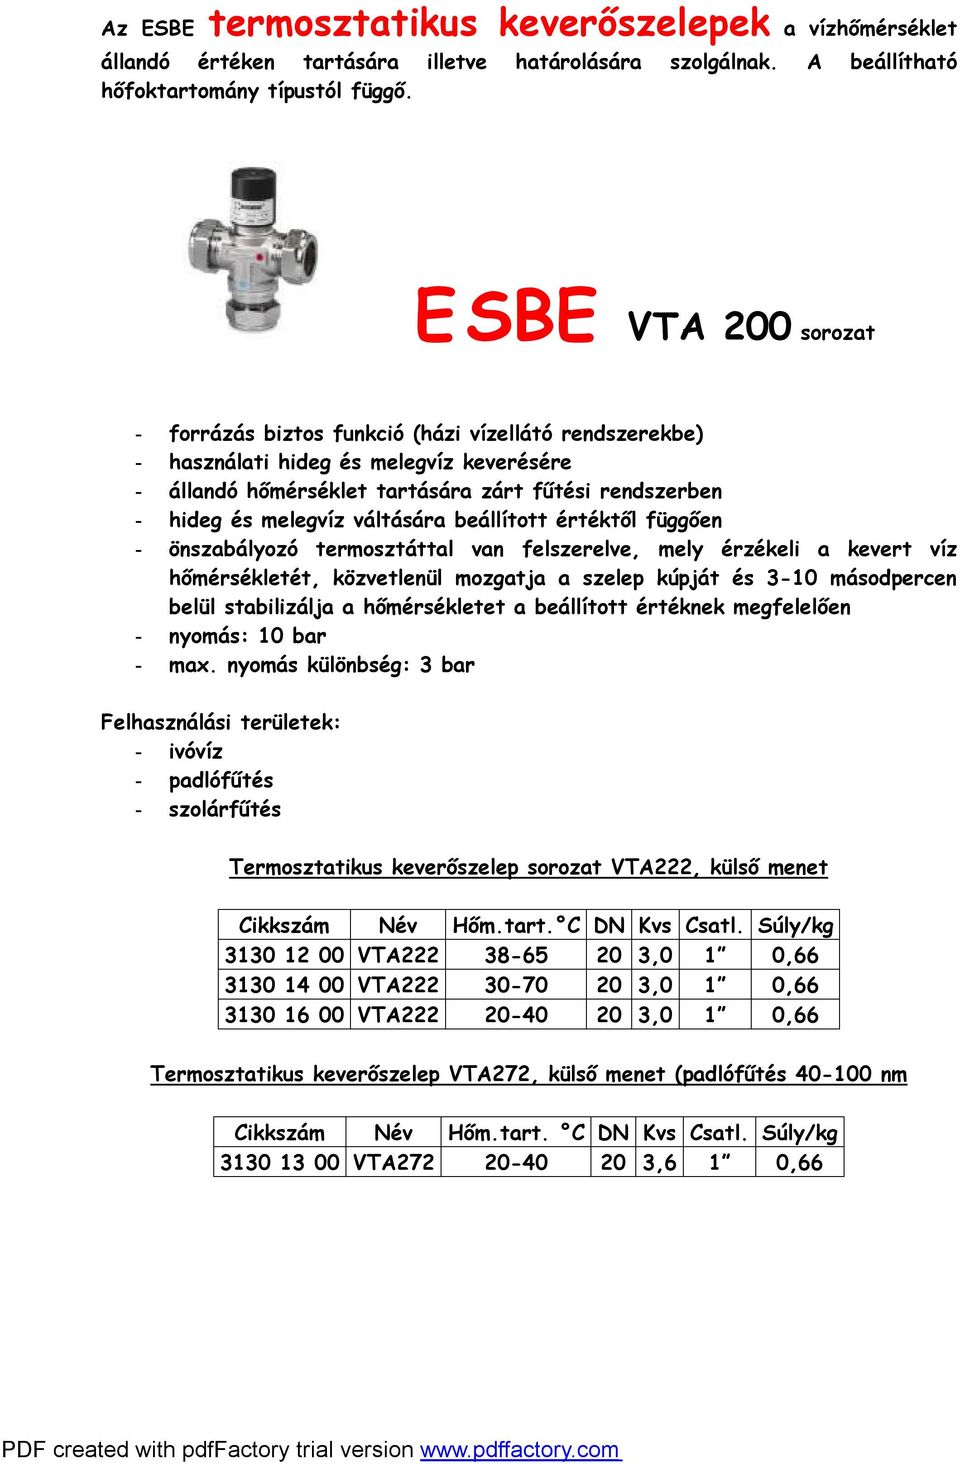 ESBE termékek 2009 (A teljes katalógus a oldalról letölthető) - PDF  Ingyenes letöltés